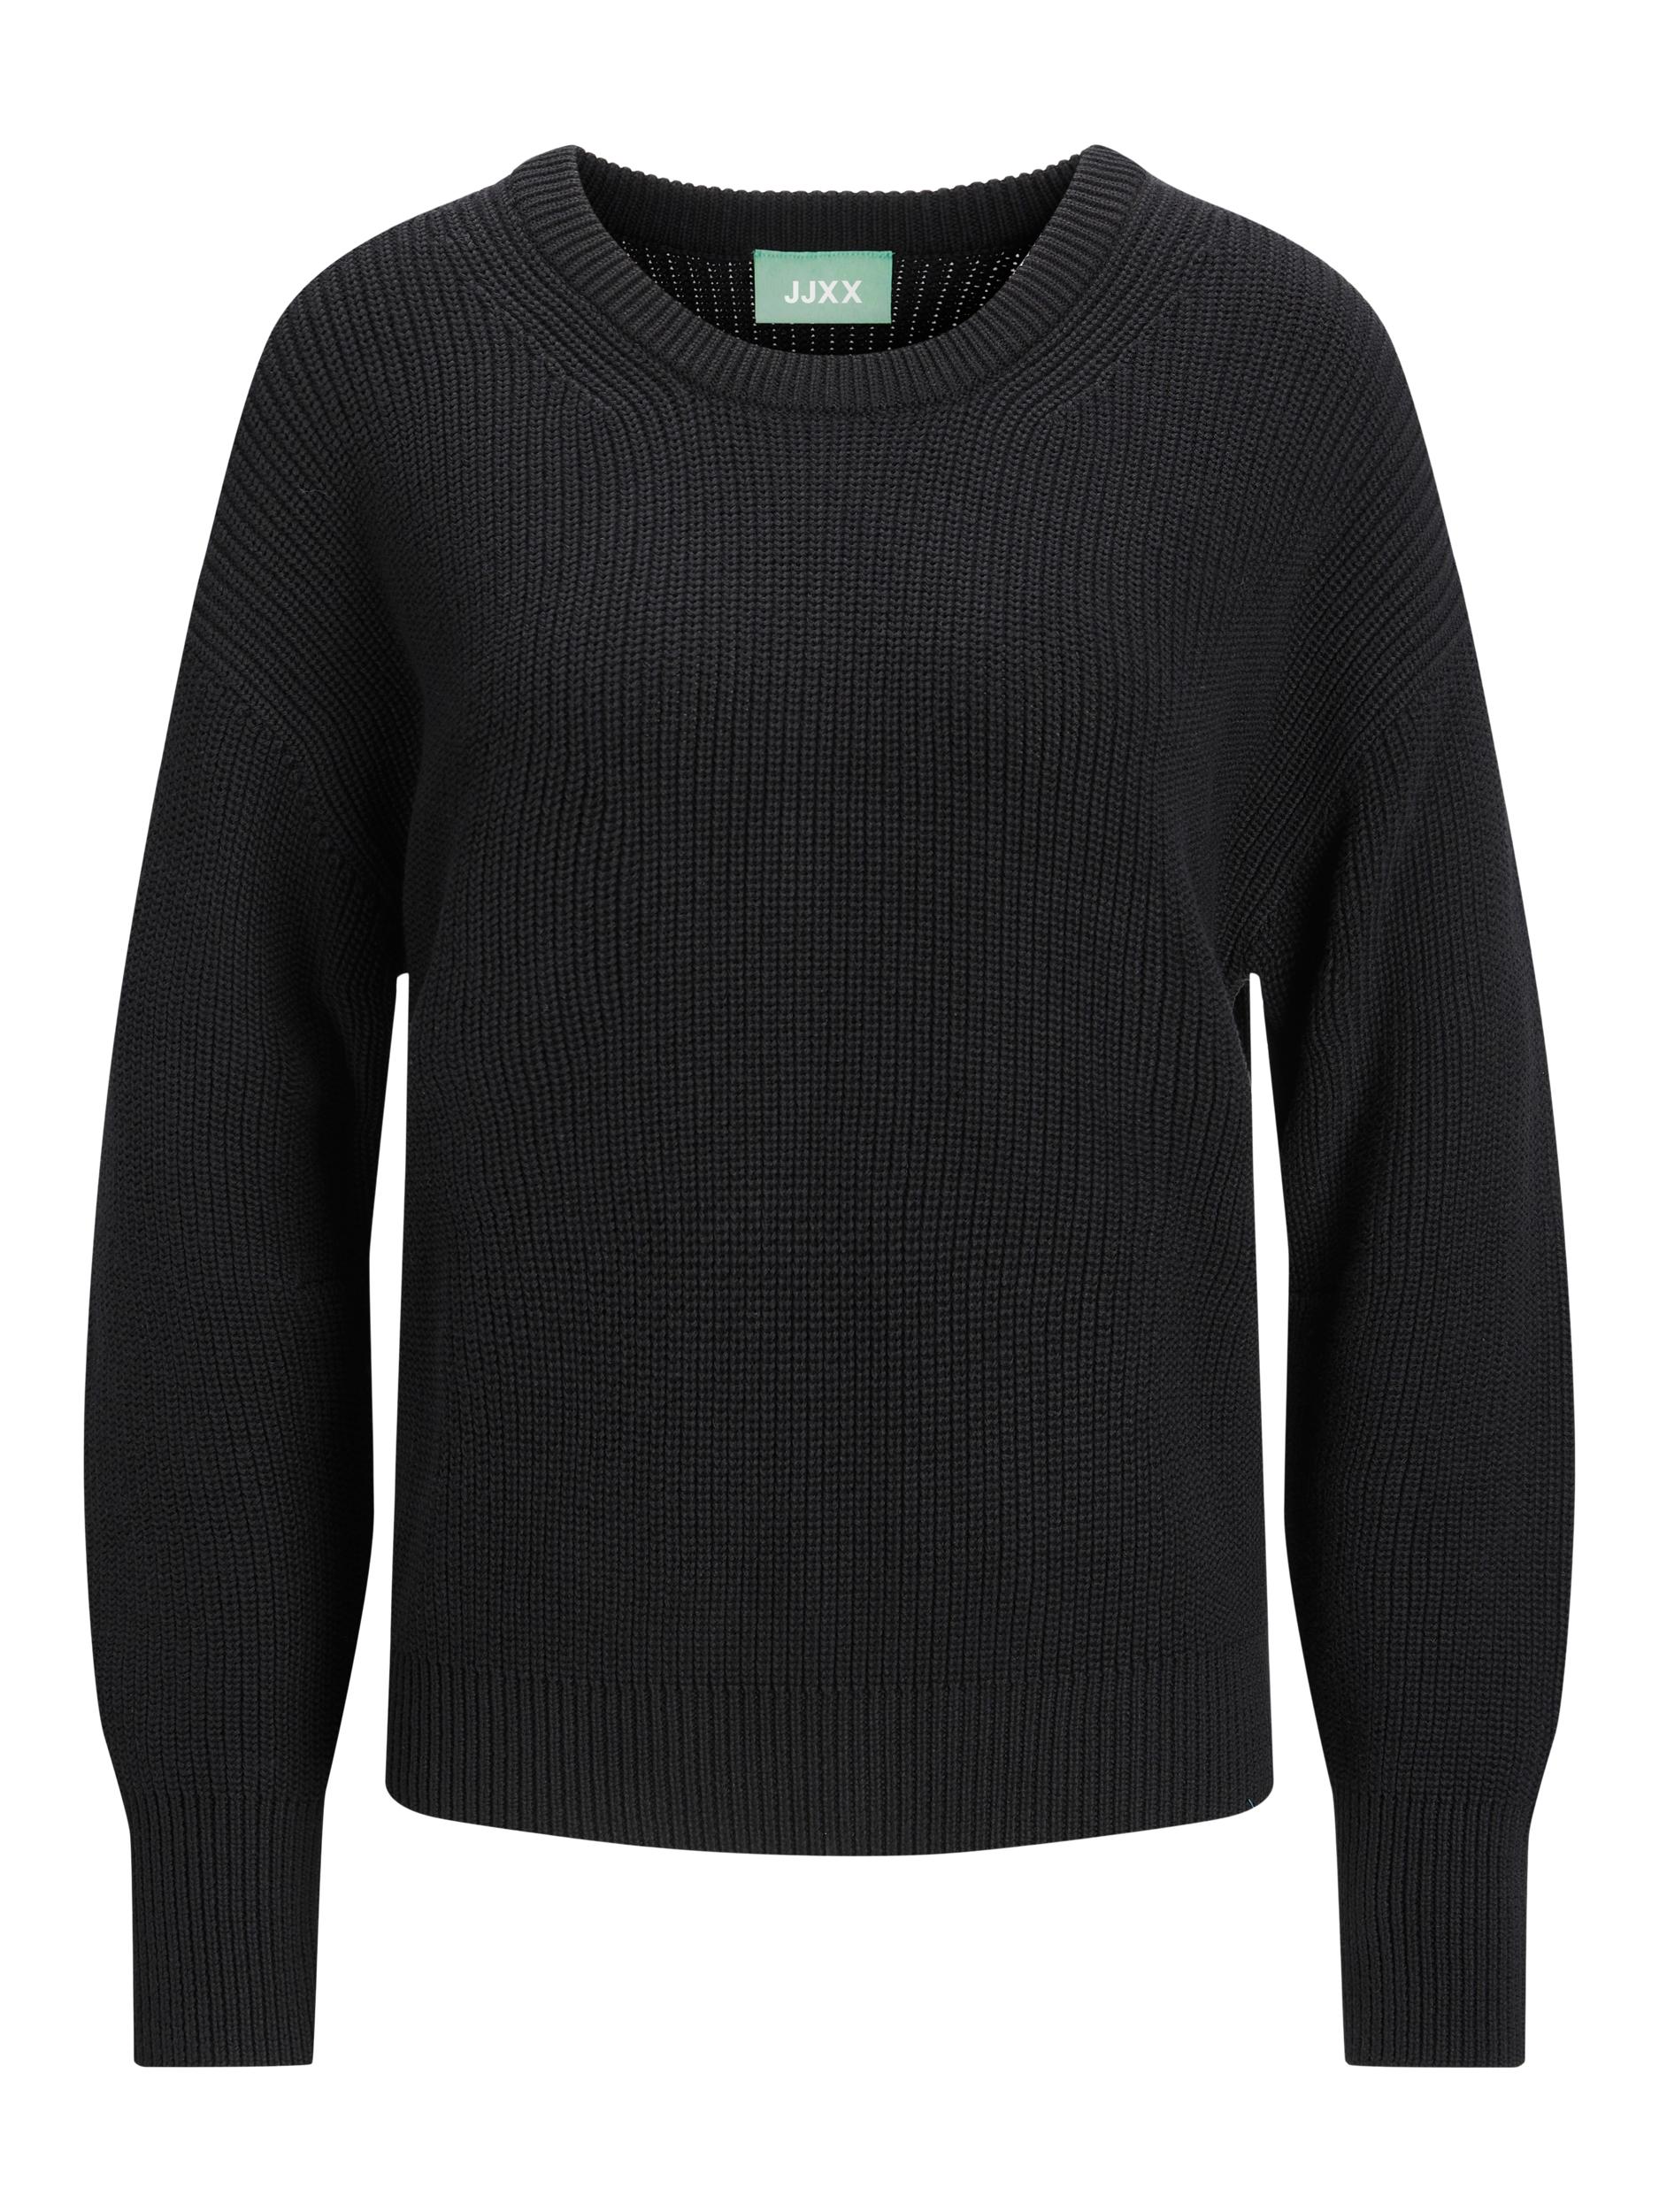 Swetry & dzianina Odzież JJXX Sweter Mila w kolorze Czarnym 